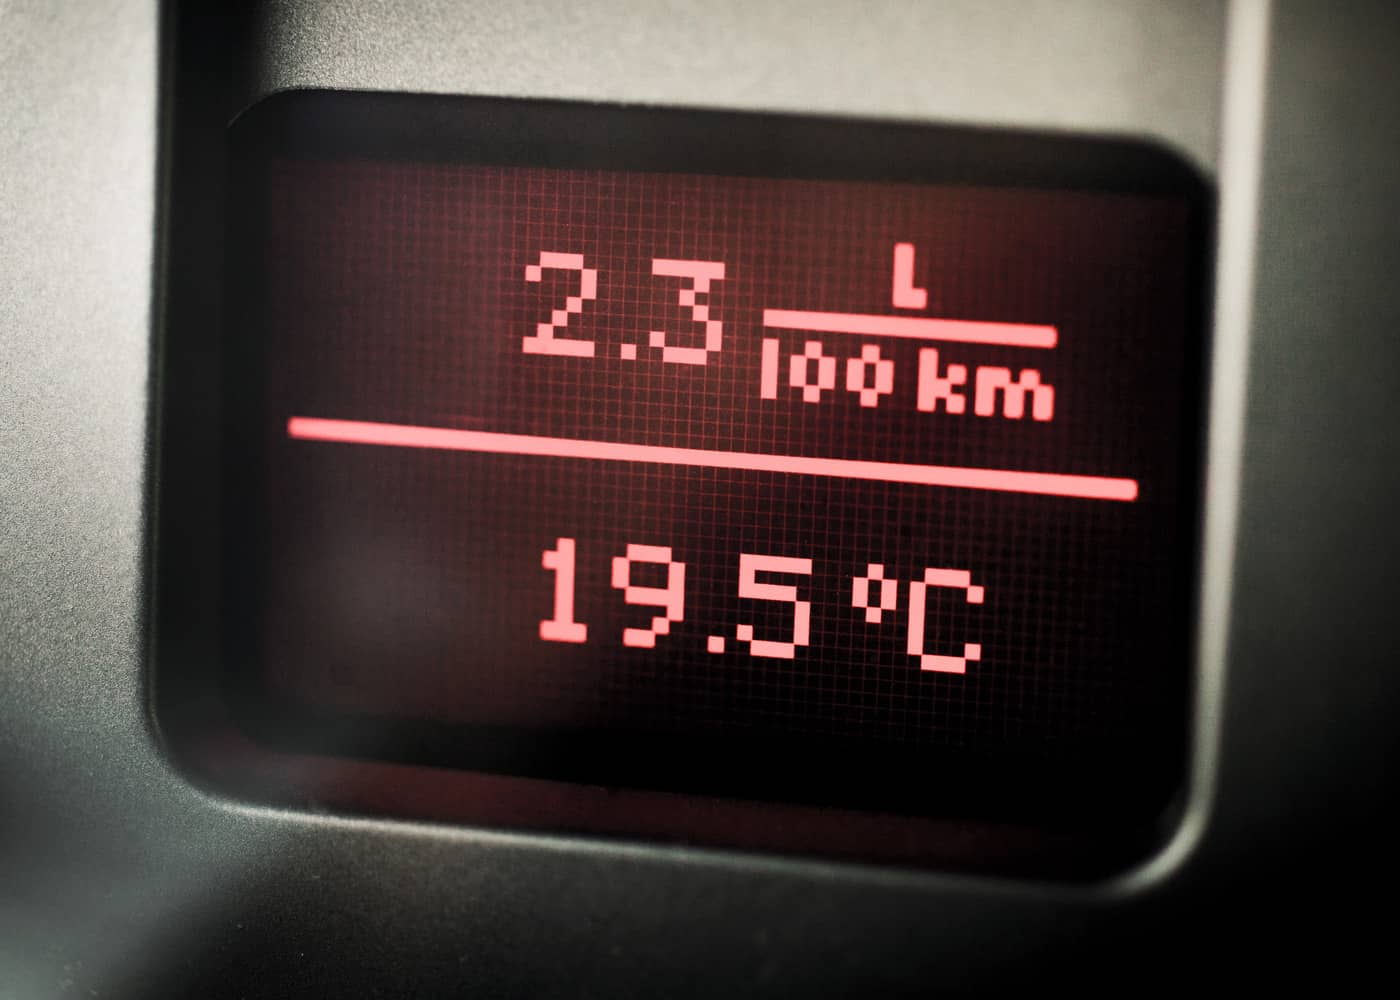 consommation voiture et température